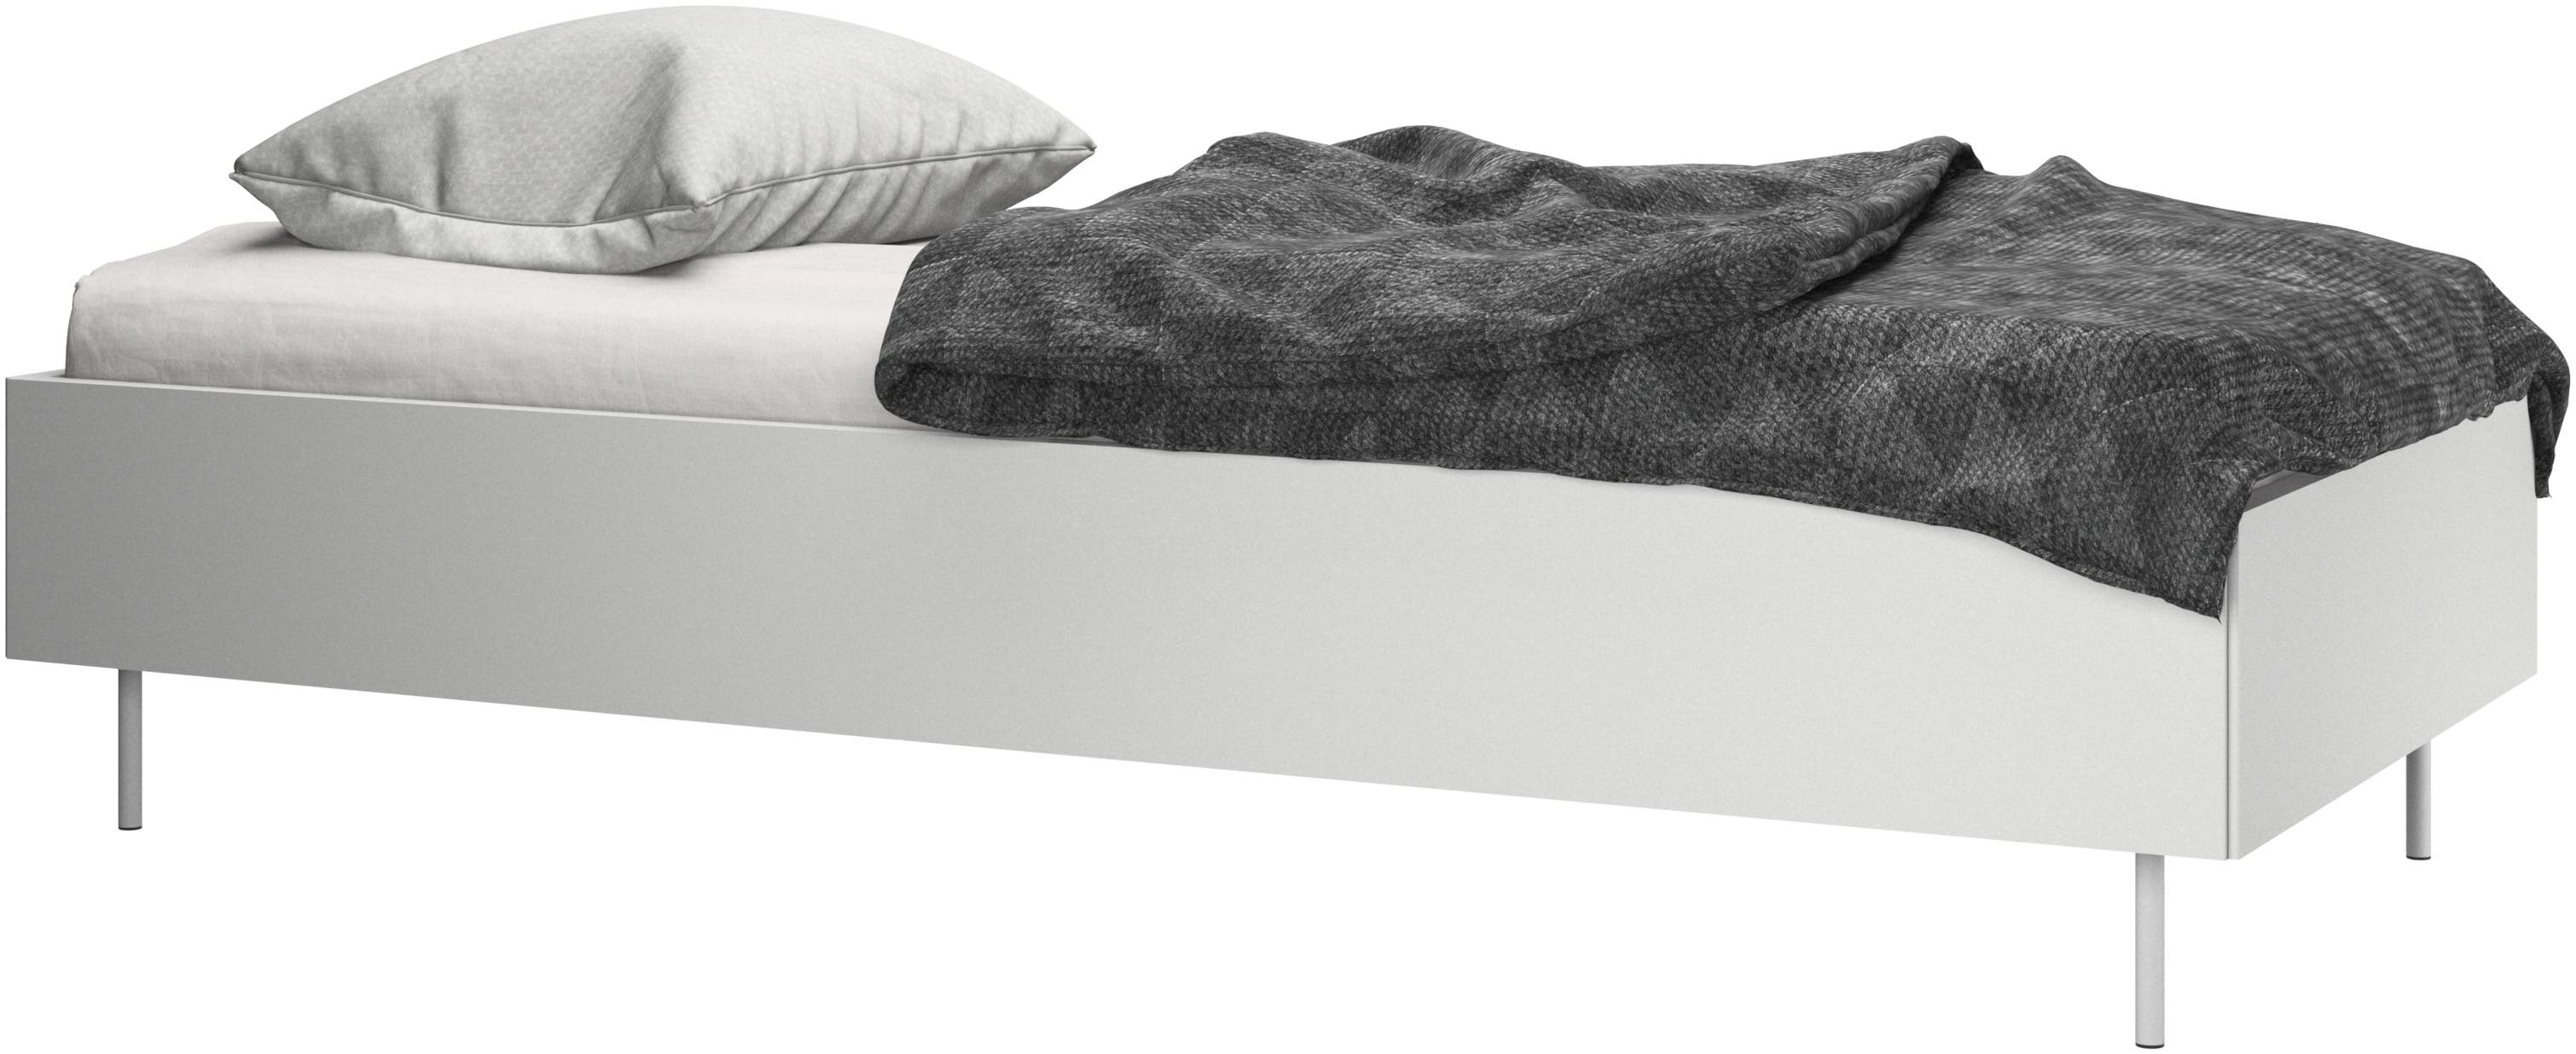 Lugano 床組，含床腳和排骨架，不含床頭板